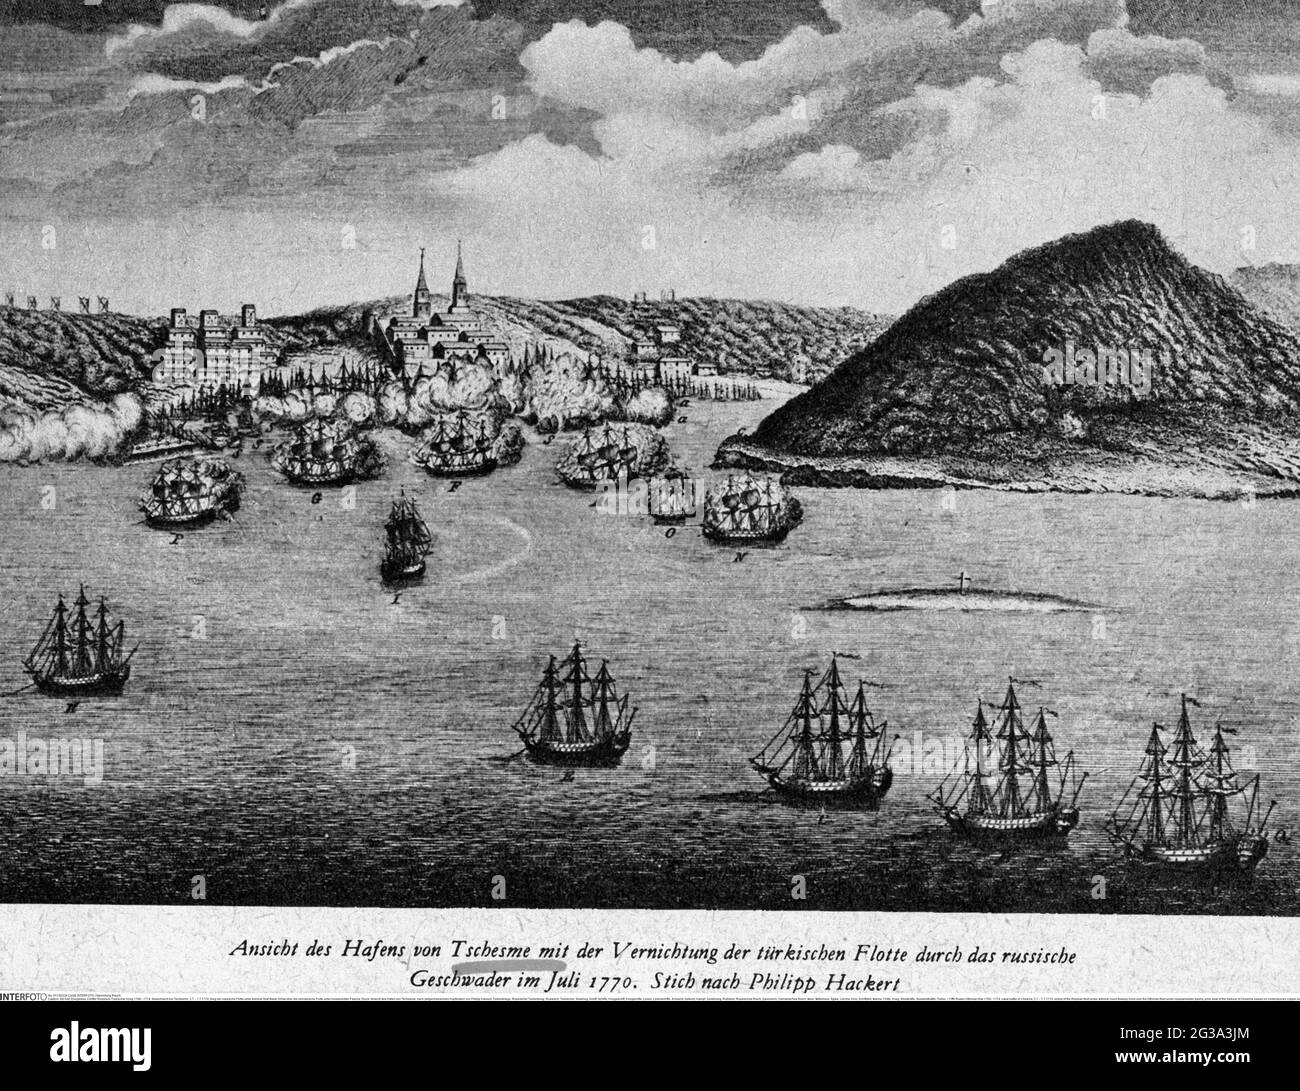 Cinquième guerre russo-ottomane 1768 - 1774, bataille navale de Chesma, 5.7. - 7.7.1770, INFO-AUTORISATION-DROITS-SUPPLÉMENTAIRES-NON-DISPONIBLE Banque D'Images